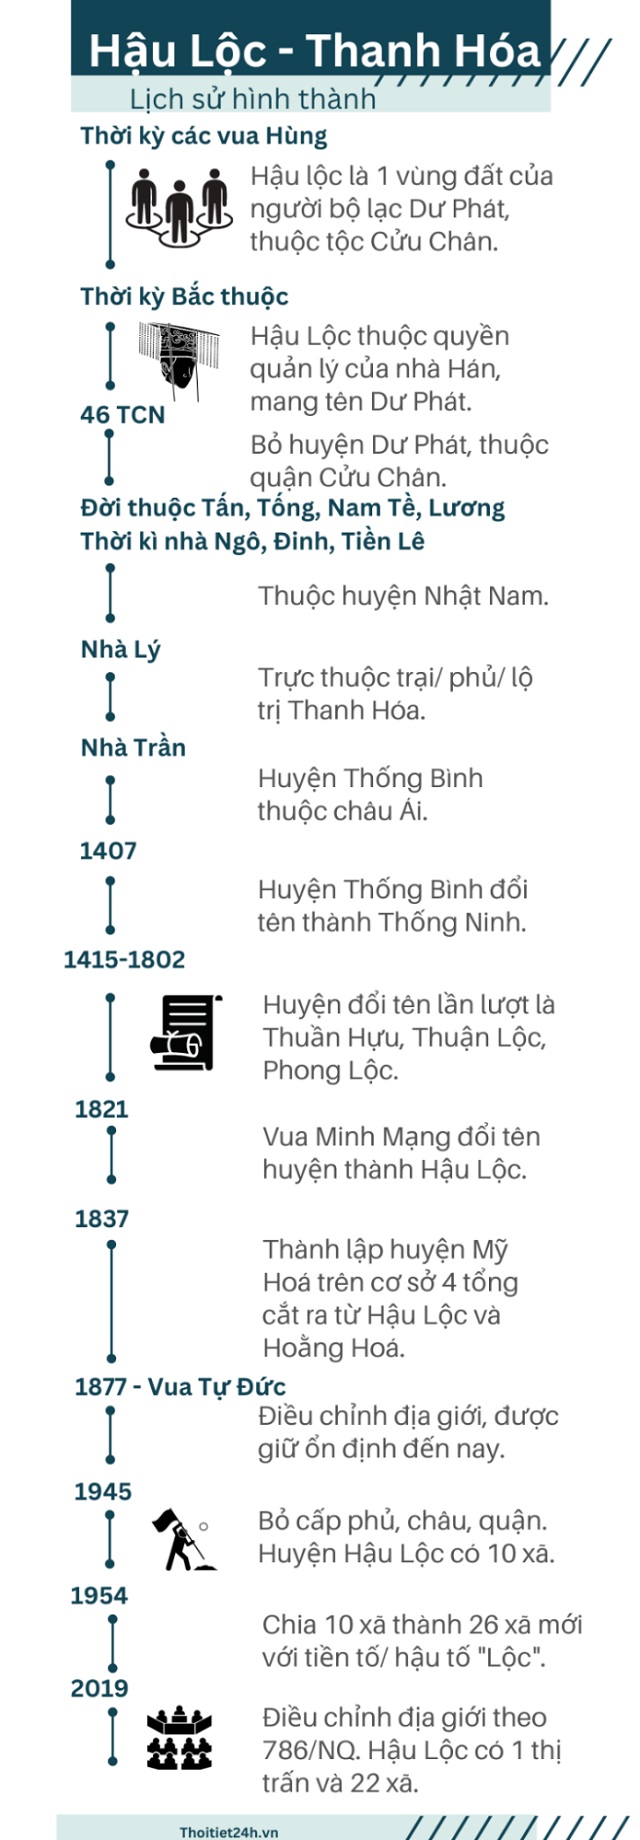 Lịch sử hình thành và phát triển của huyện Hậu Lộc tỉnh Thanh Hóa